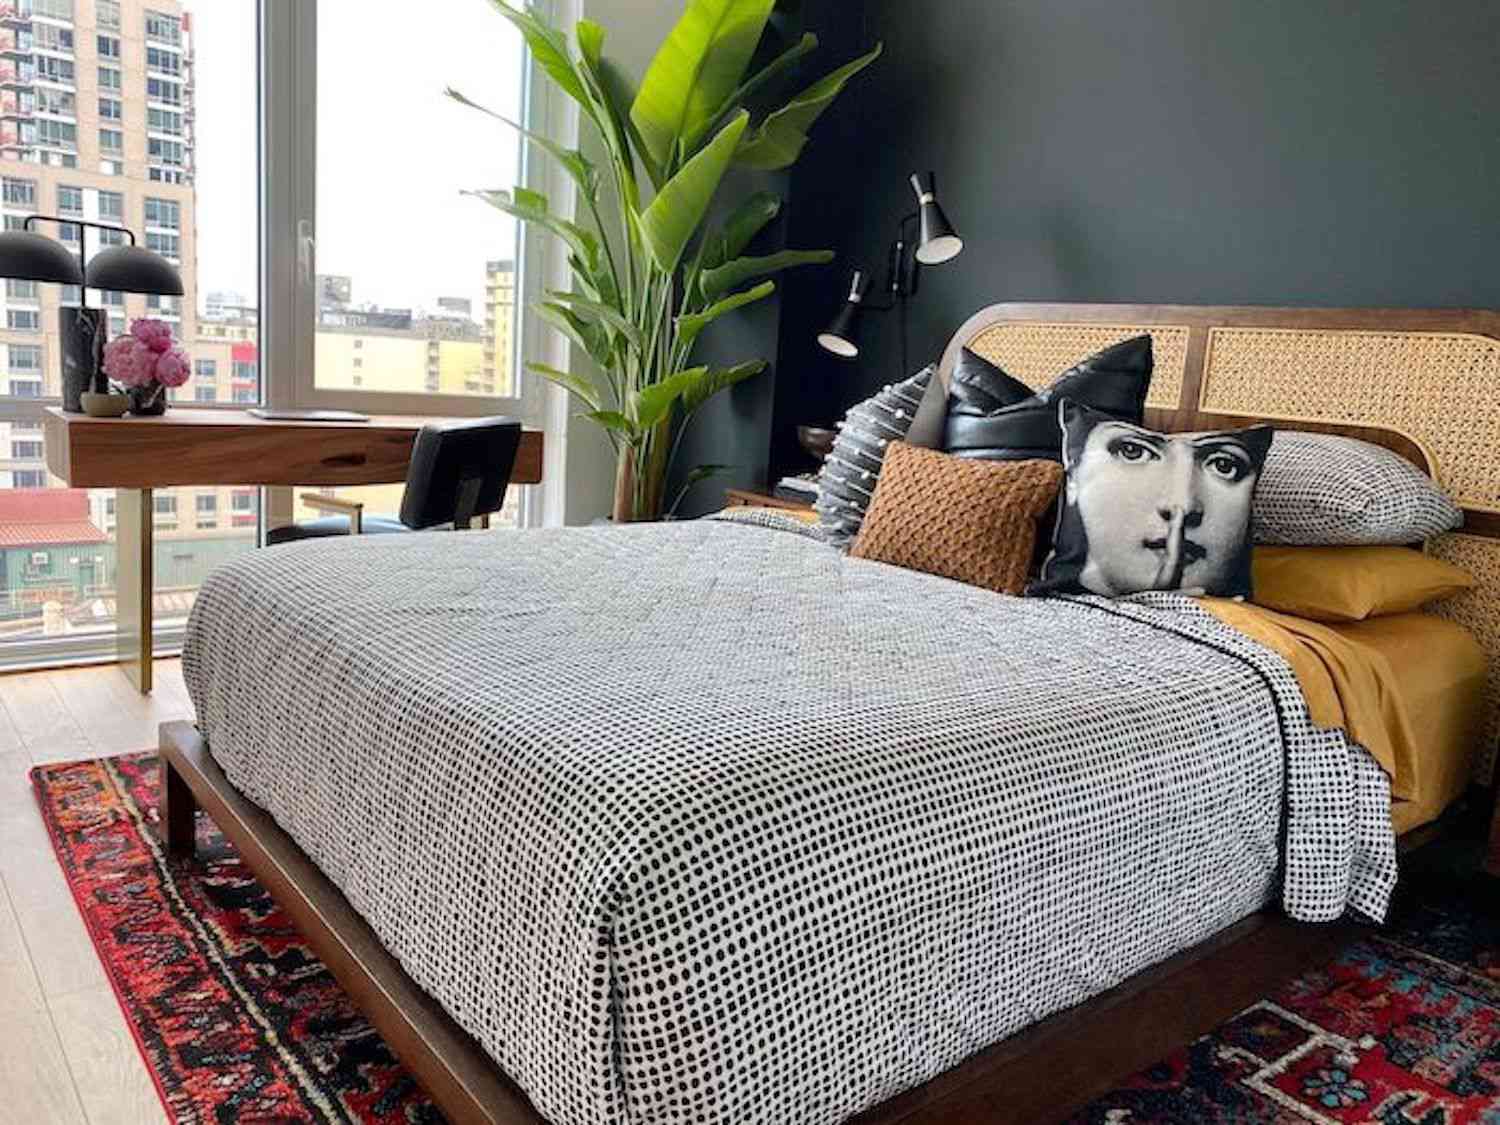 chambre moderne avec tête de lit en osier, doudoune à pois noirs et blancs, tapis à motifs rouges, grande plante dans le coin